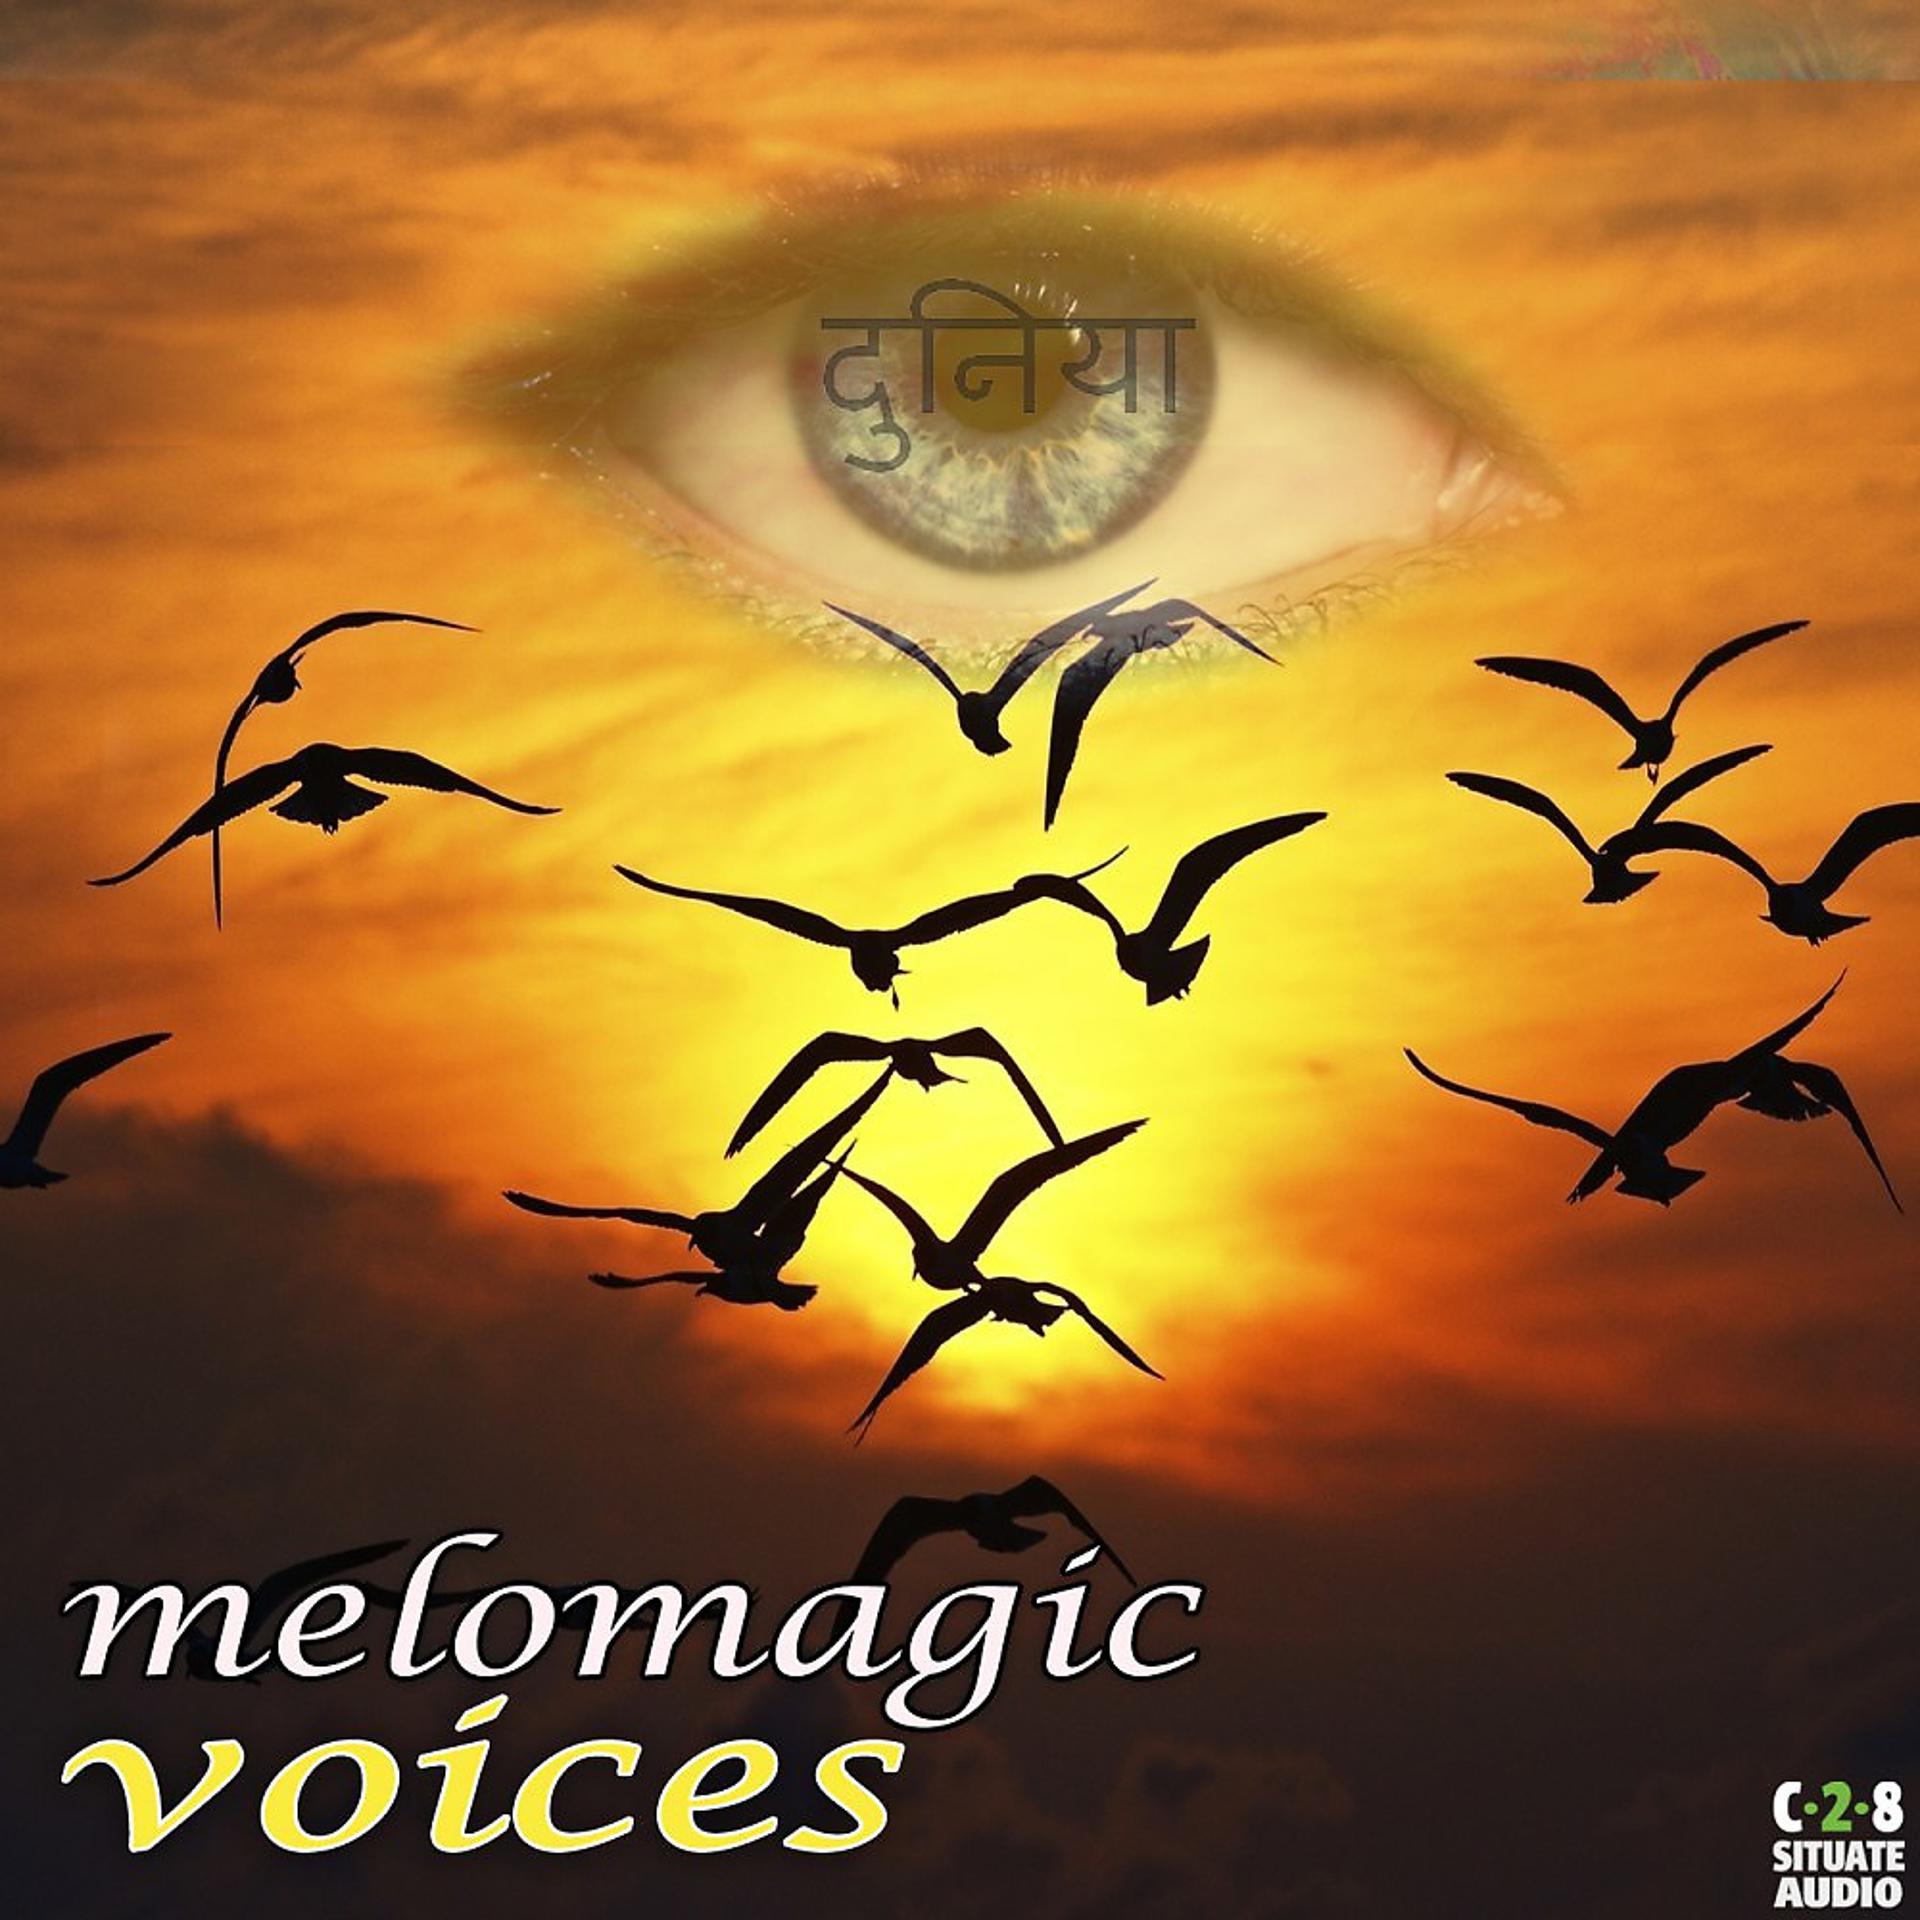 Постер альбома Voices